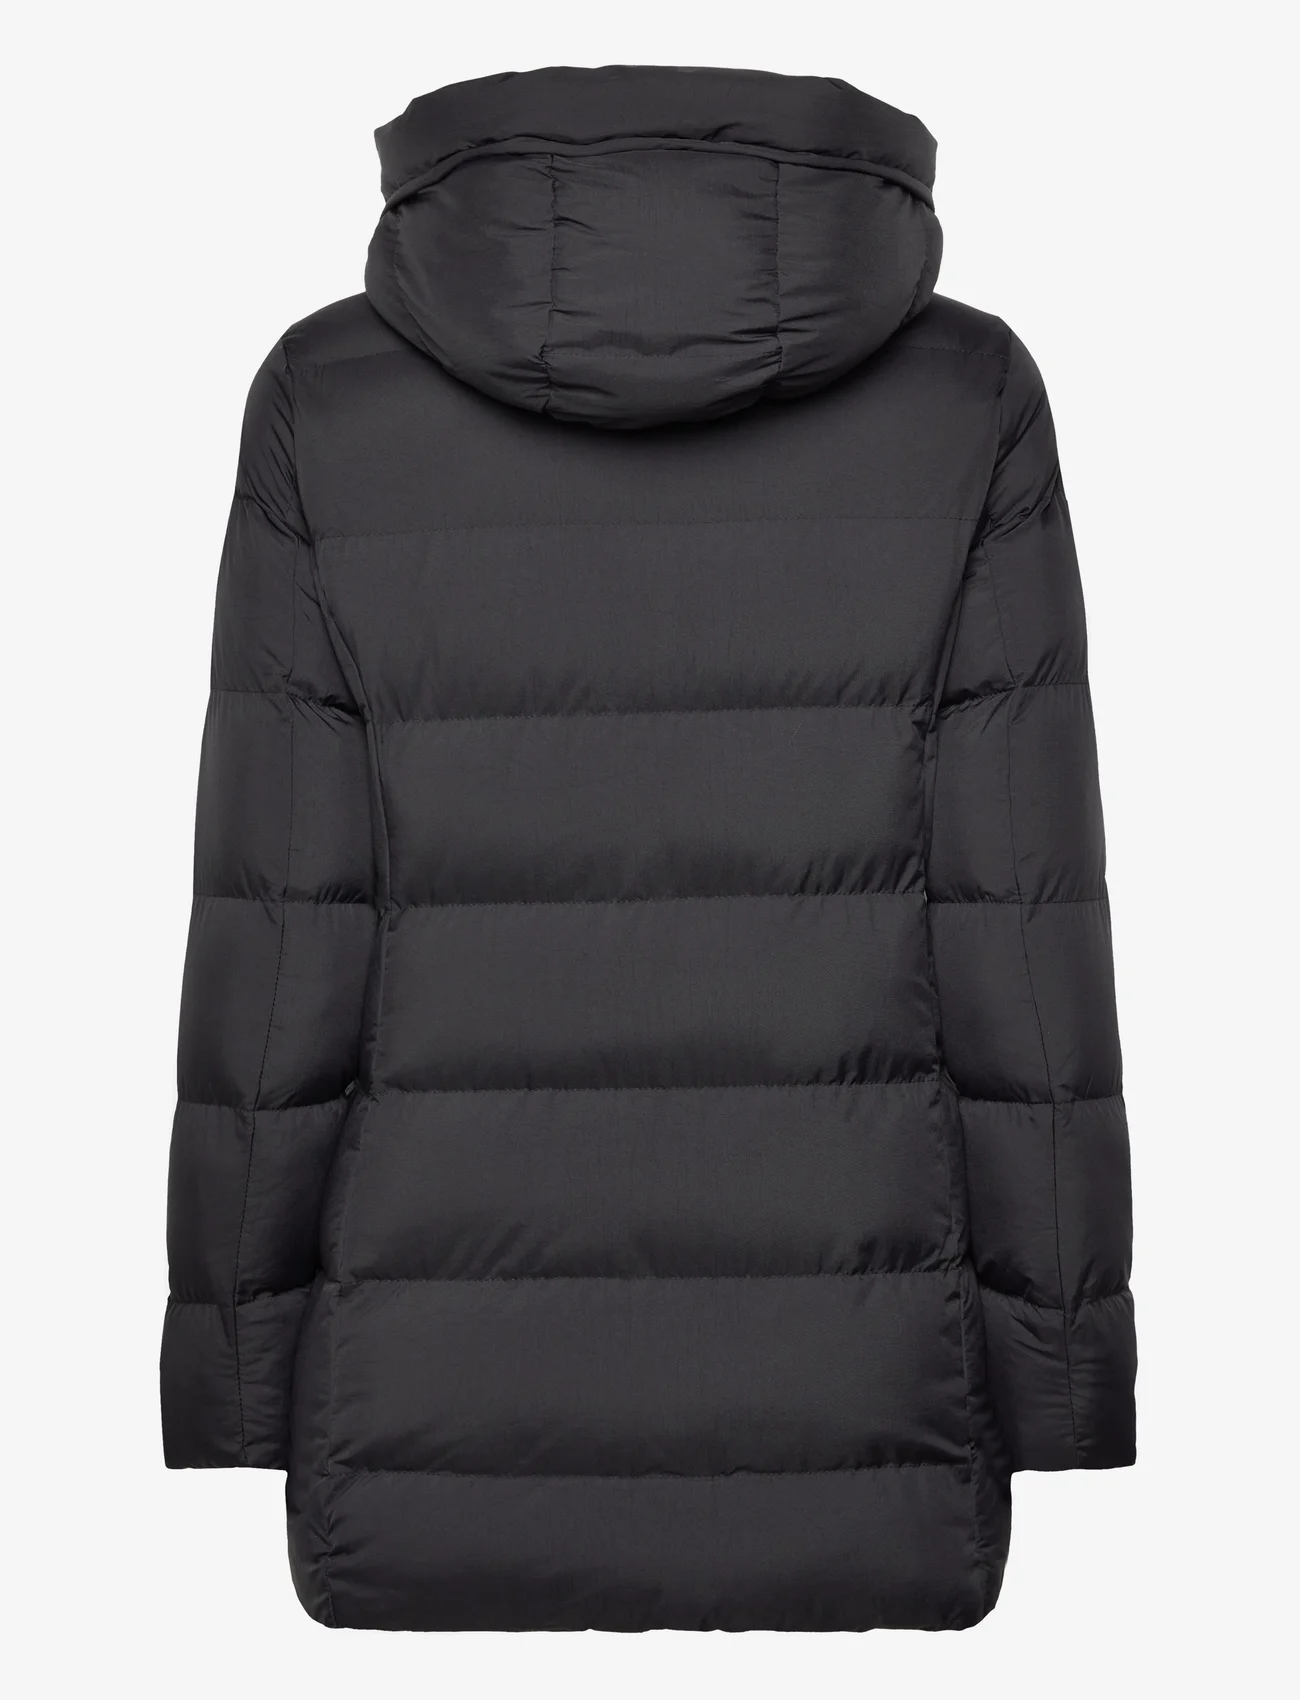 Garcia - ladies outdoor jacket - vinterjackor - black - 1